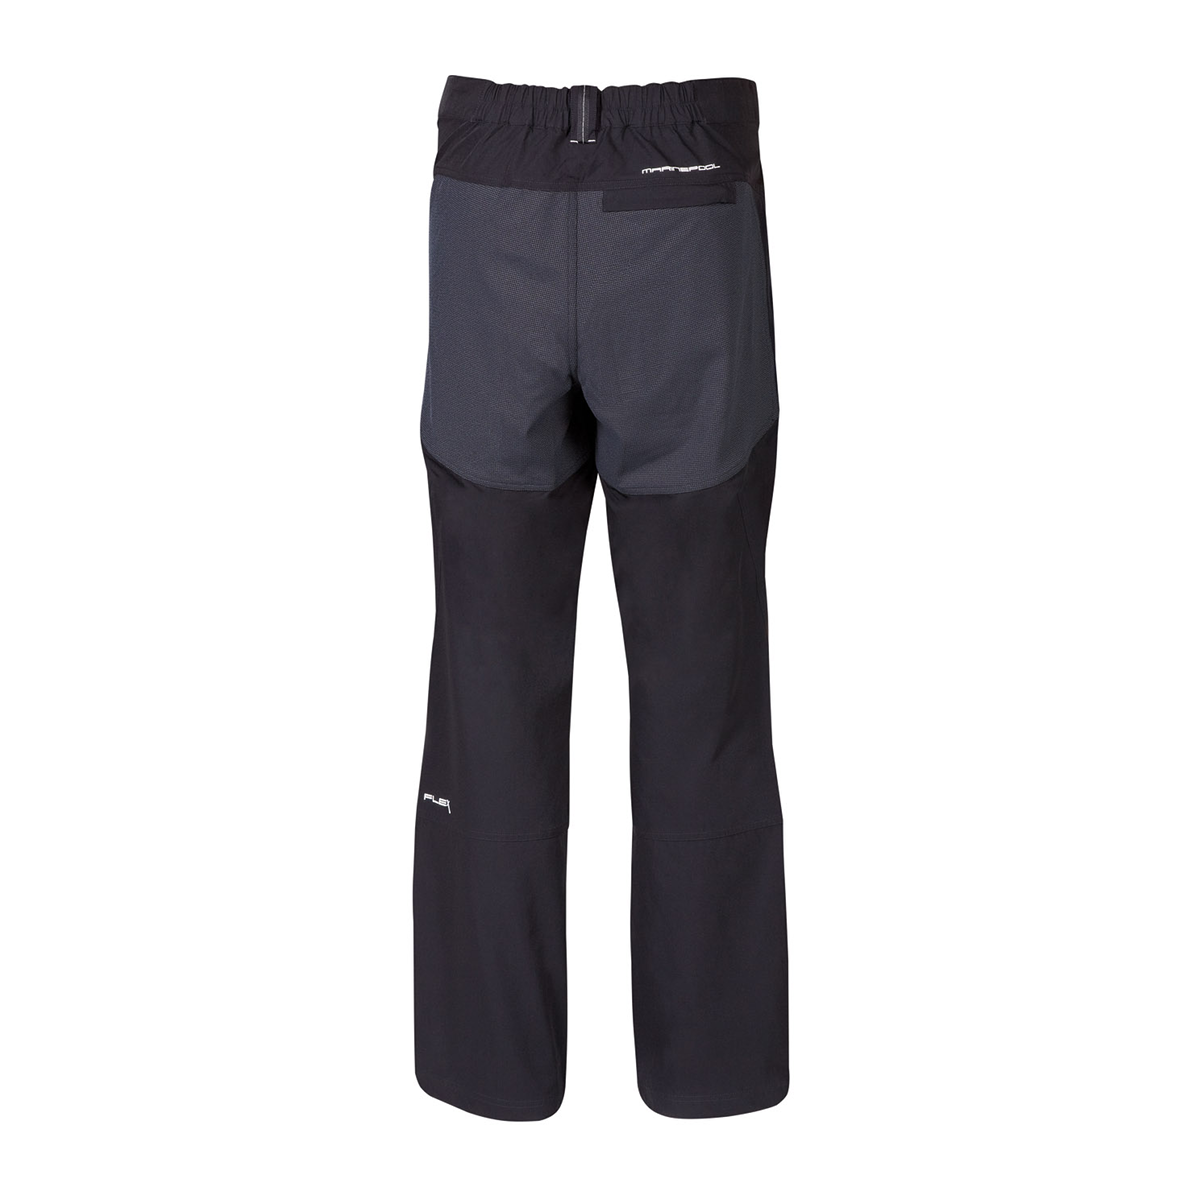 Marinepool Laser pantalon de navigation, homme - noir, taille L